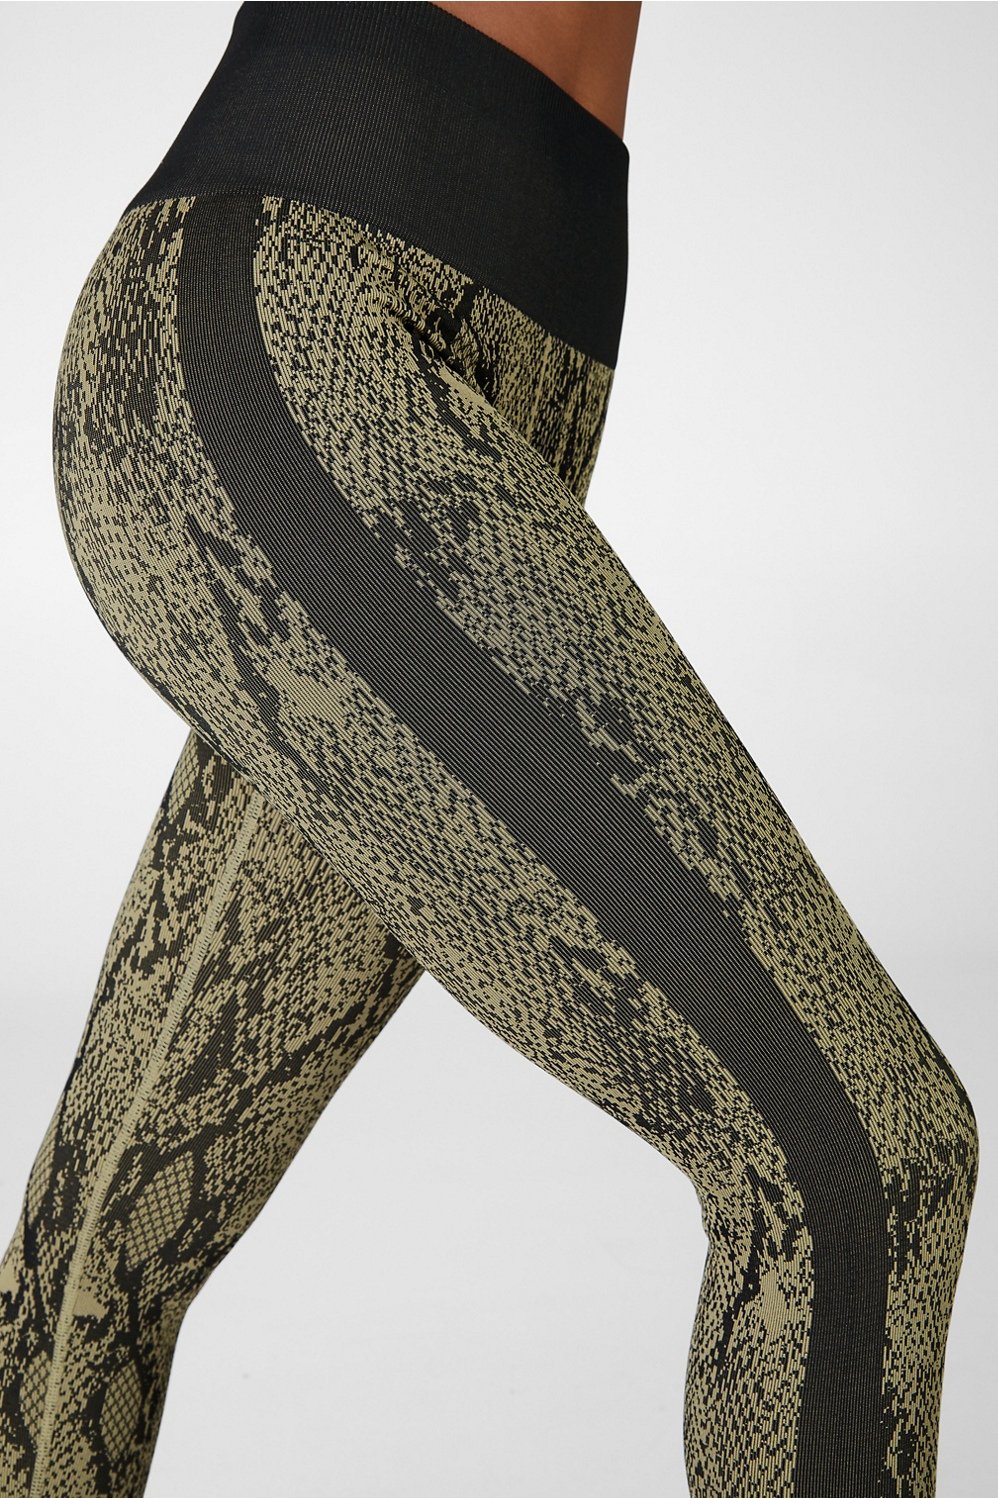  FHHST Snakeskin Print Wideband Waist Sports Leggings